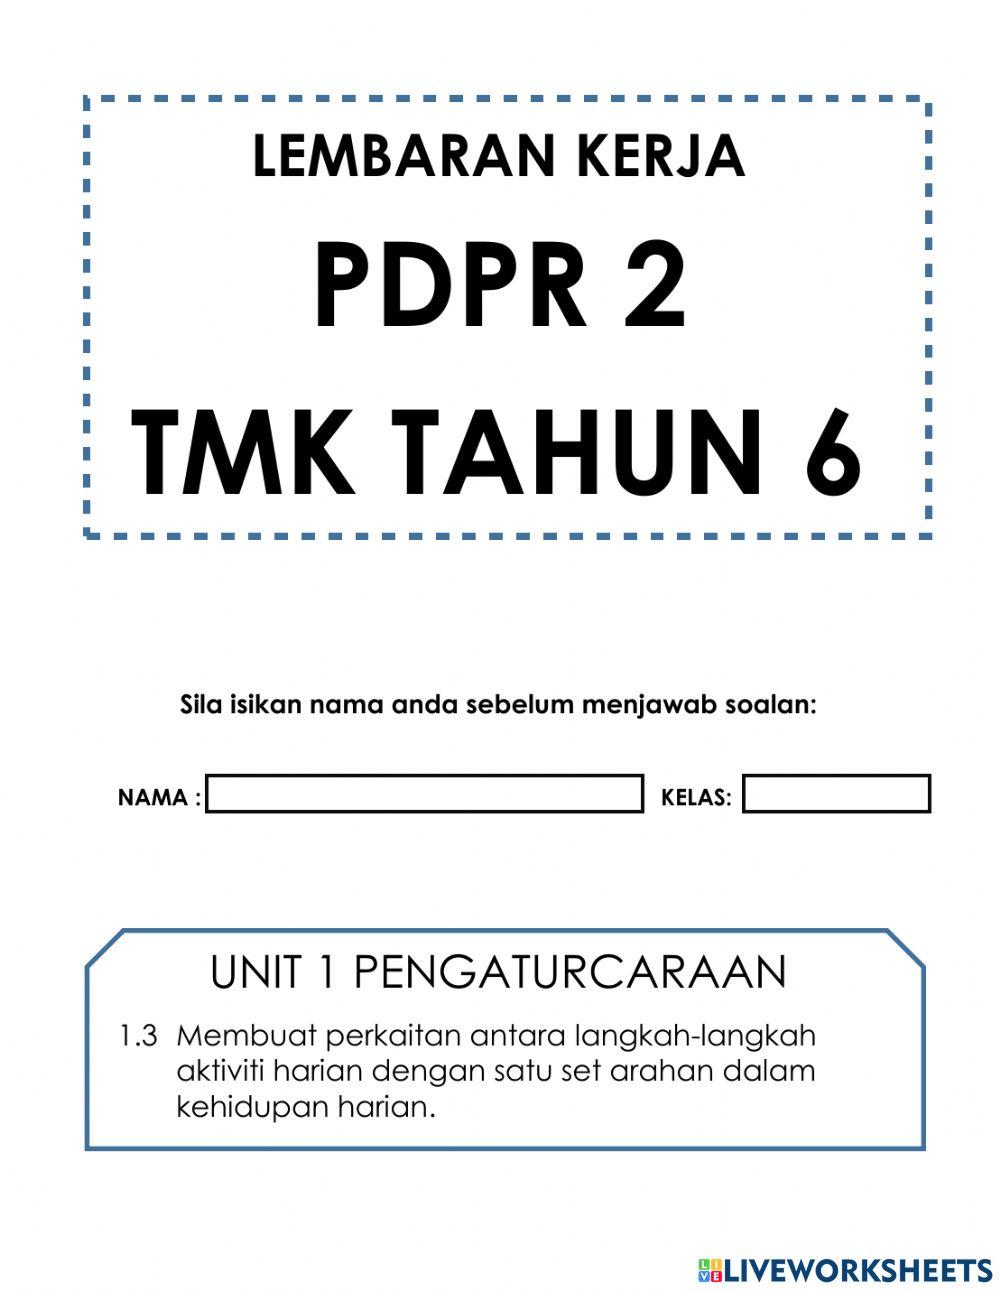 TMK Tahun 6 - PDPR 2